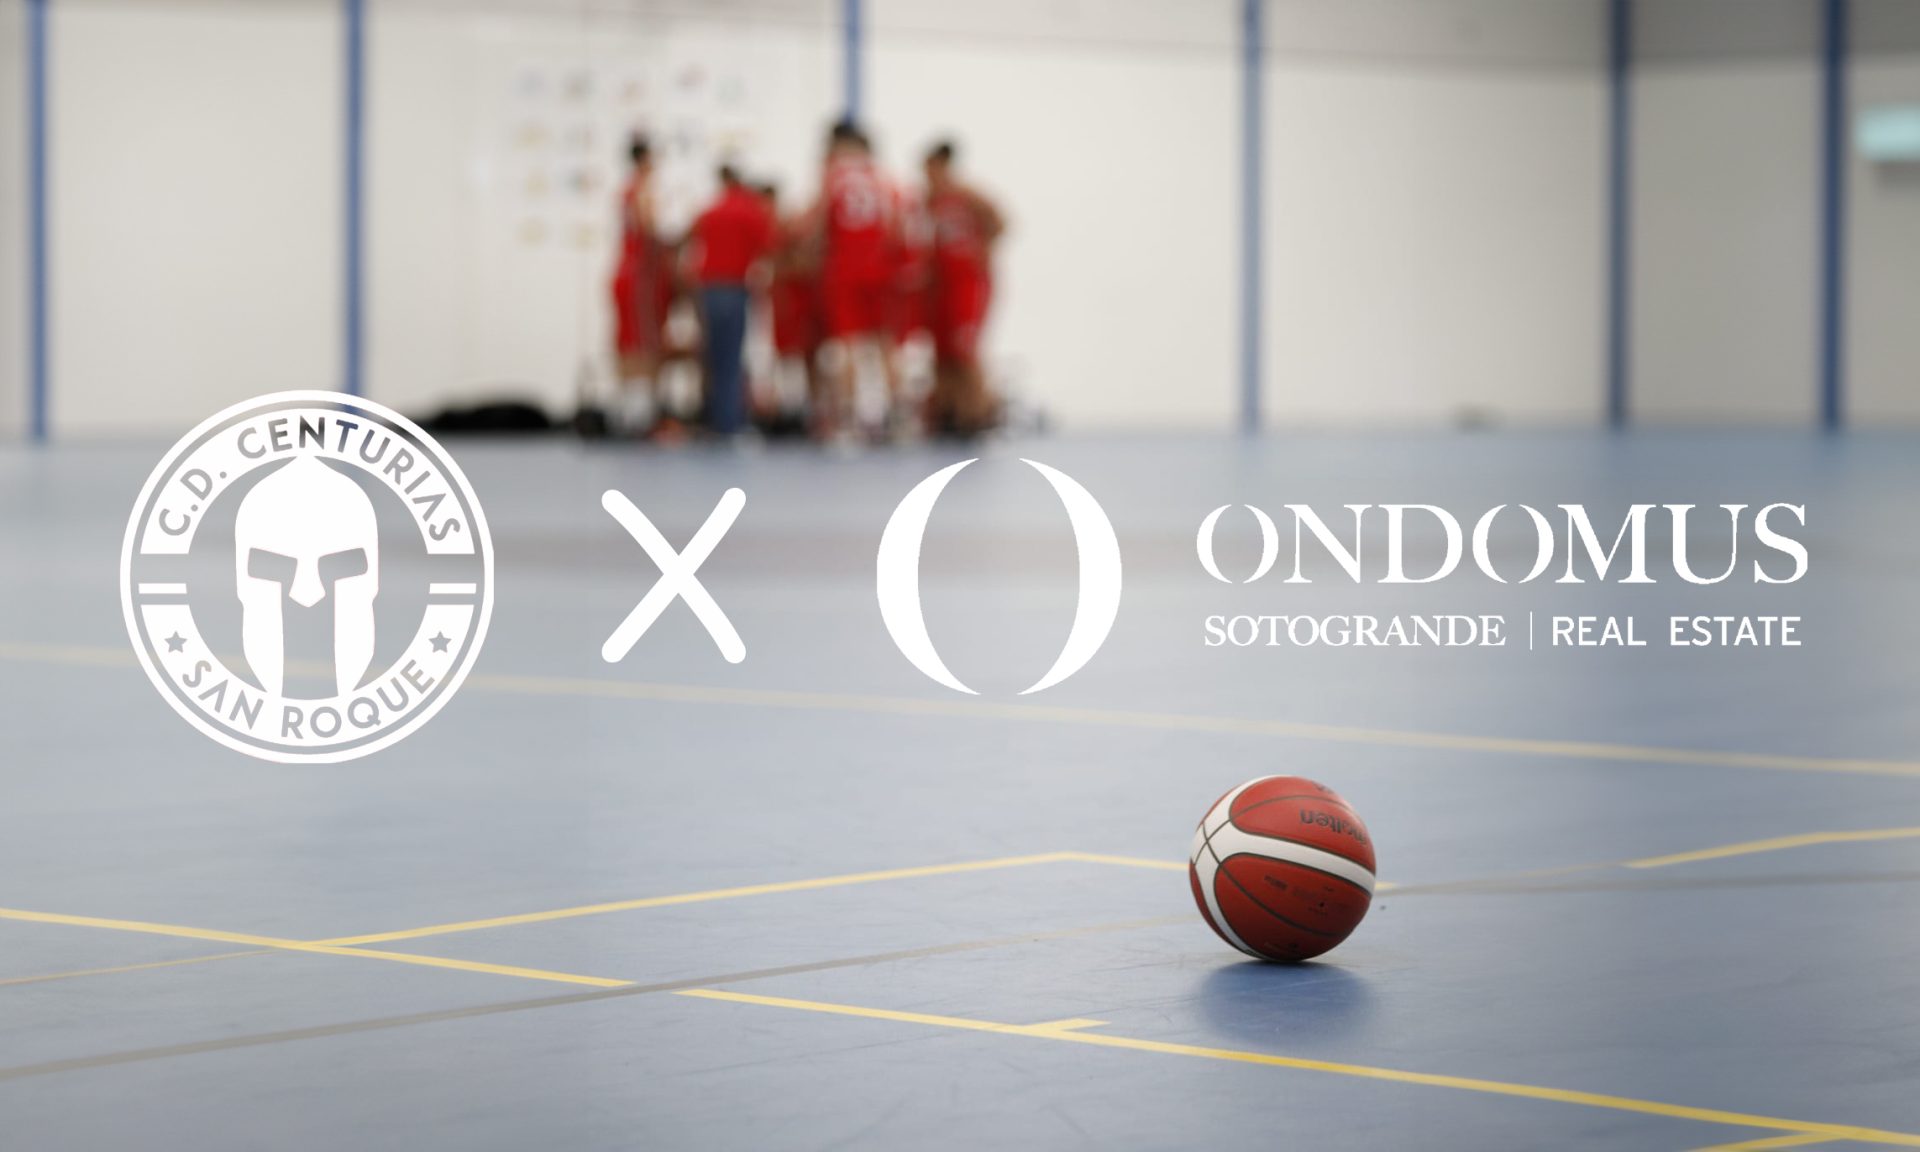 Ondomus Sotogrande Real Estate: Apoyando el talento del Mini Basket en San Roque